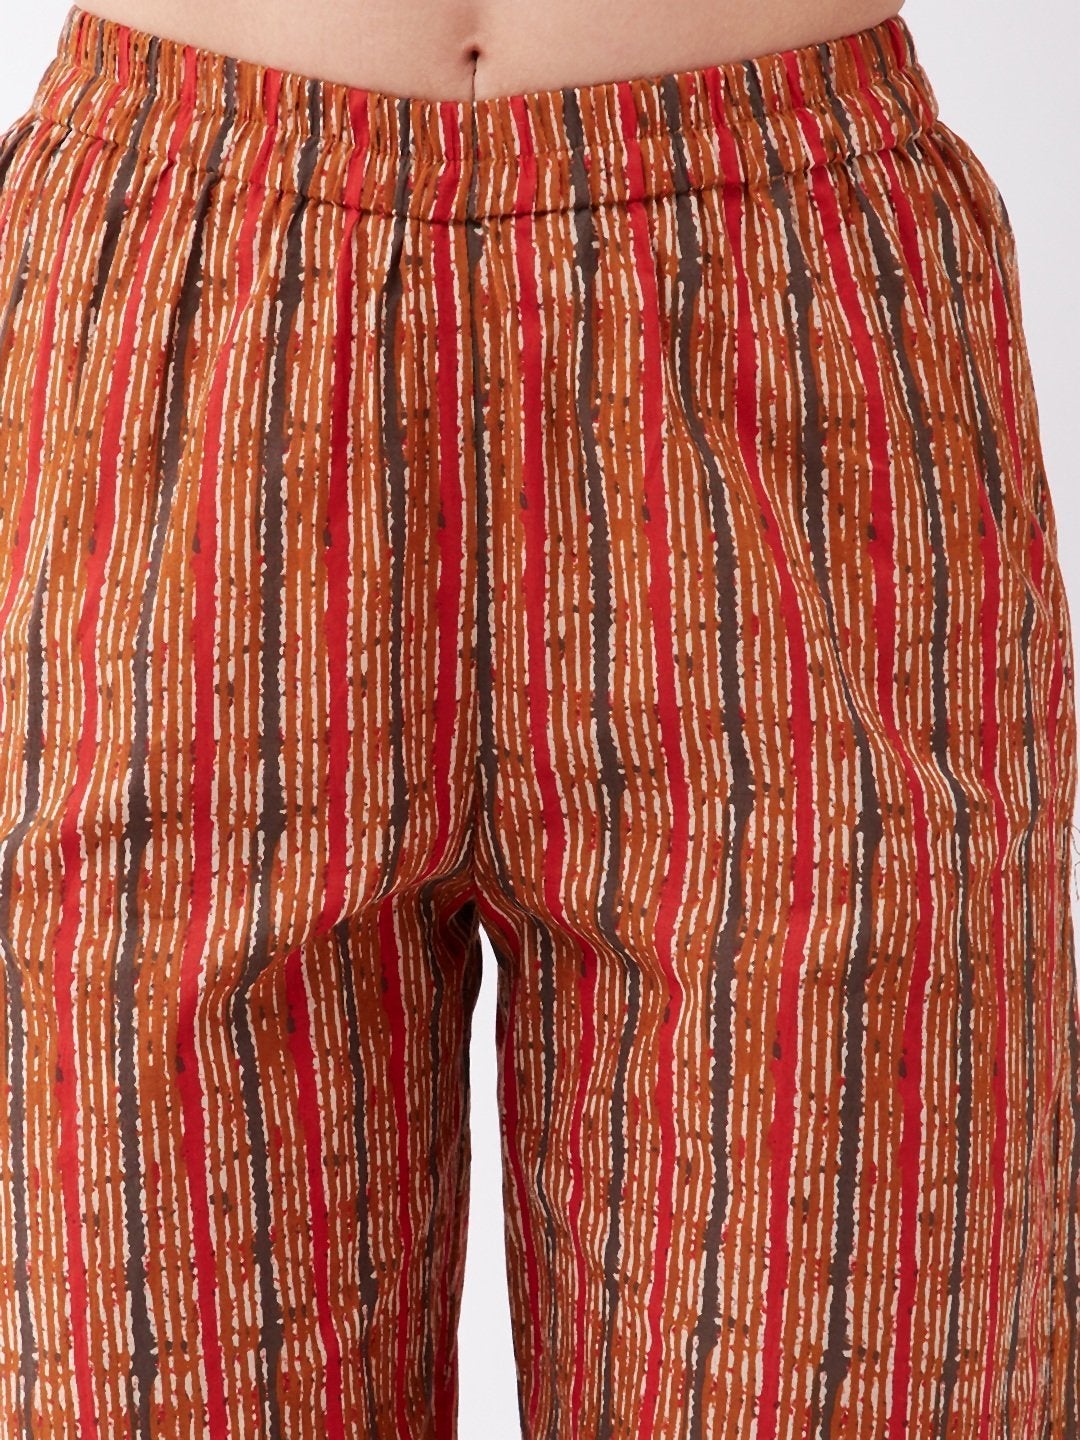 Women's Dark Mustard Striped Pant - InWeave